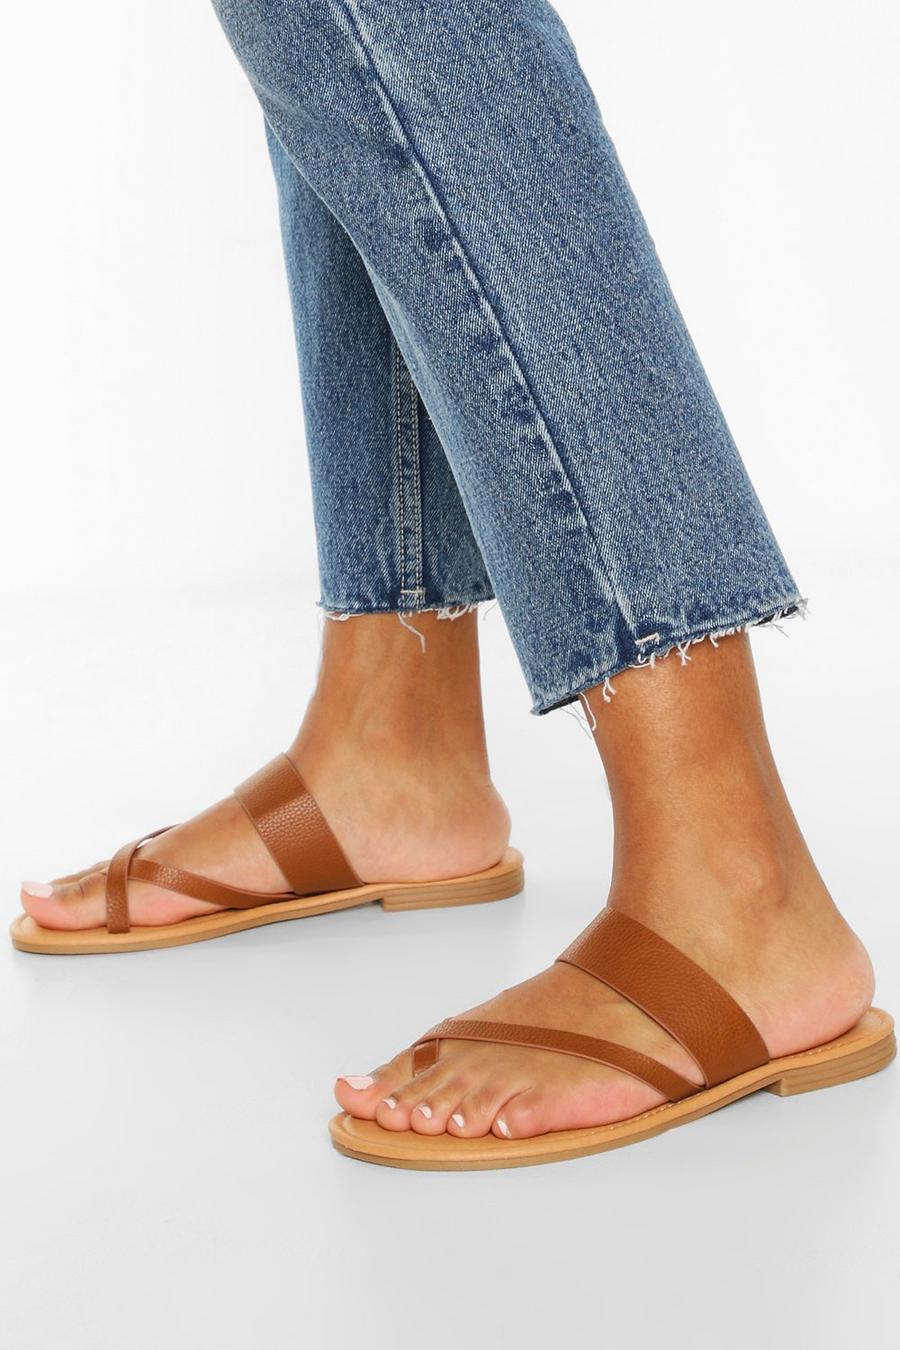 Tan brown Toe Post Sandals